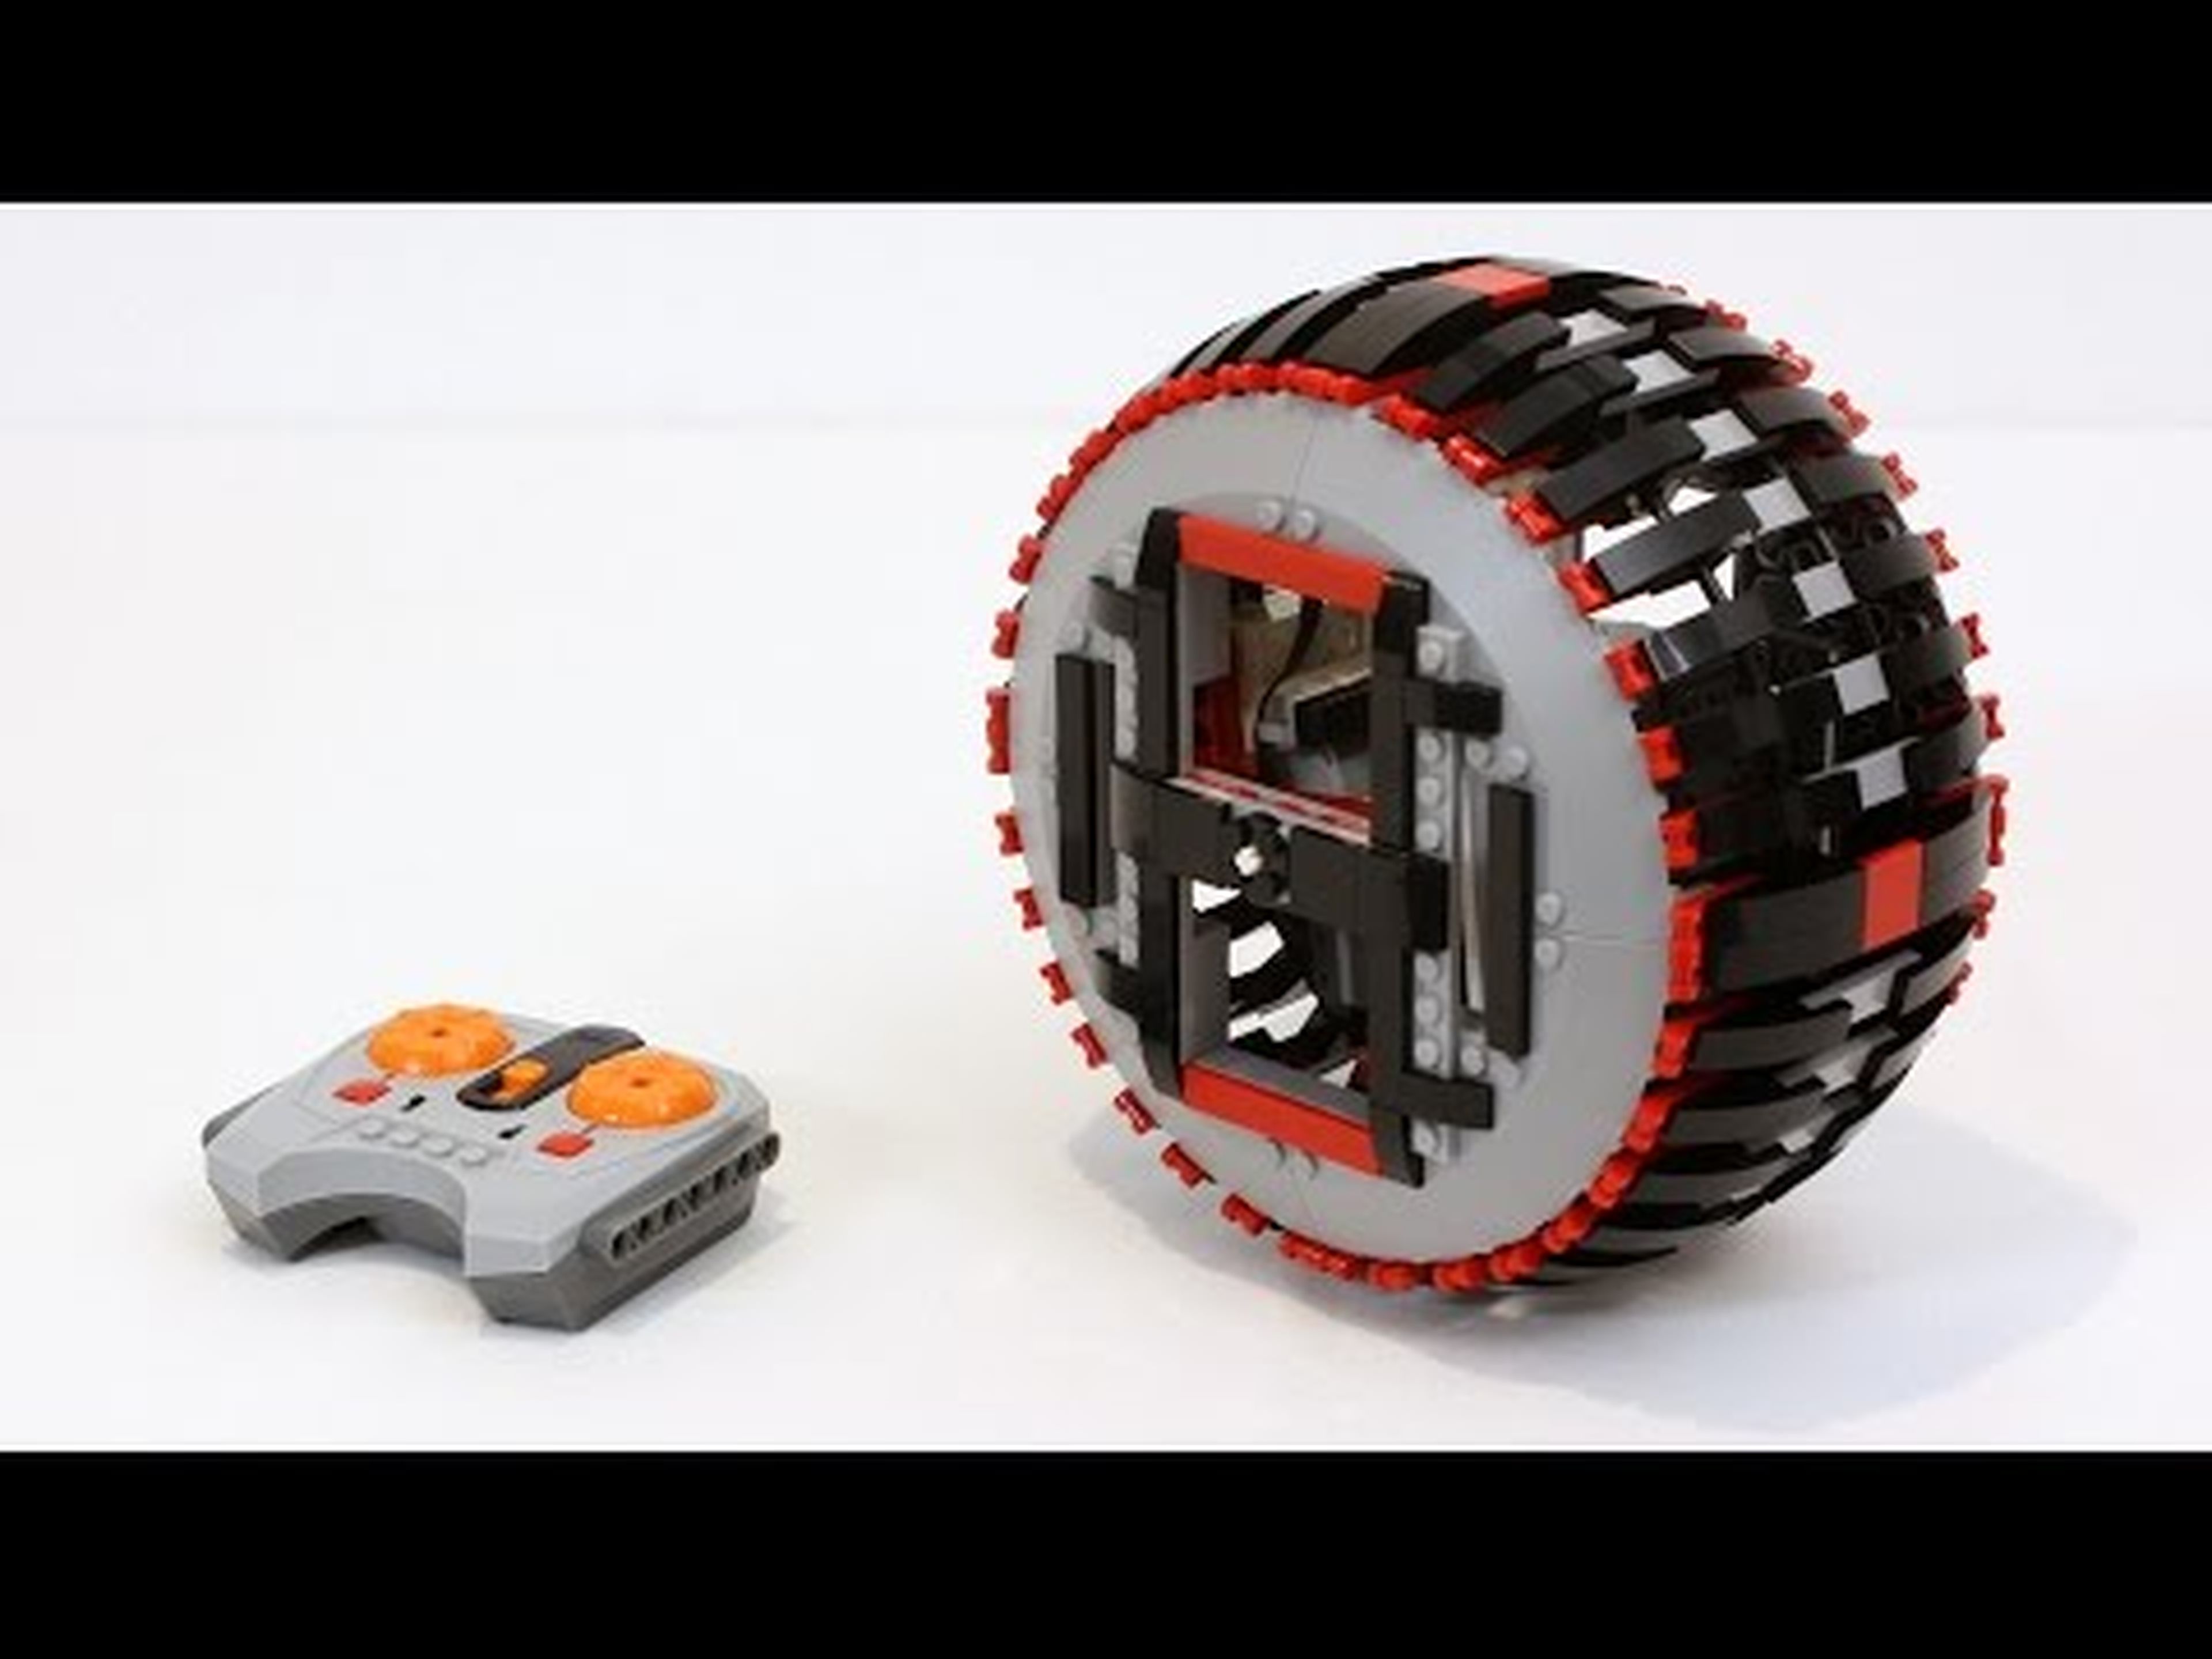 LEGO Remote Control Monowheel